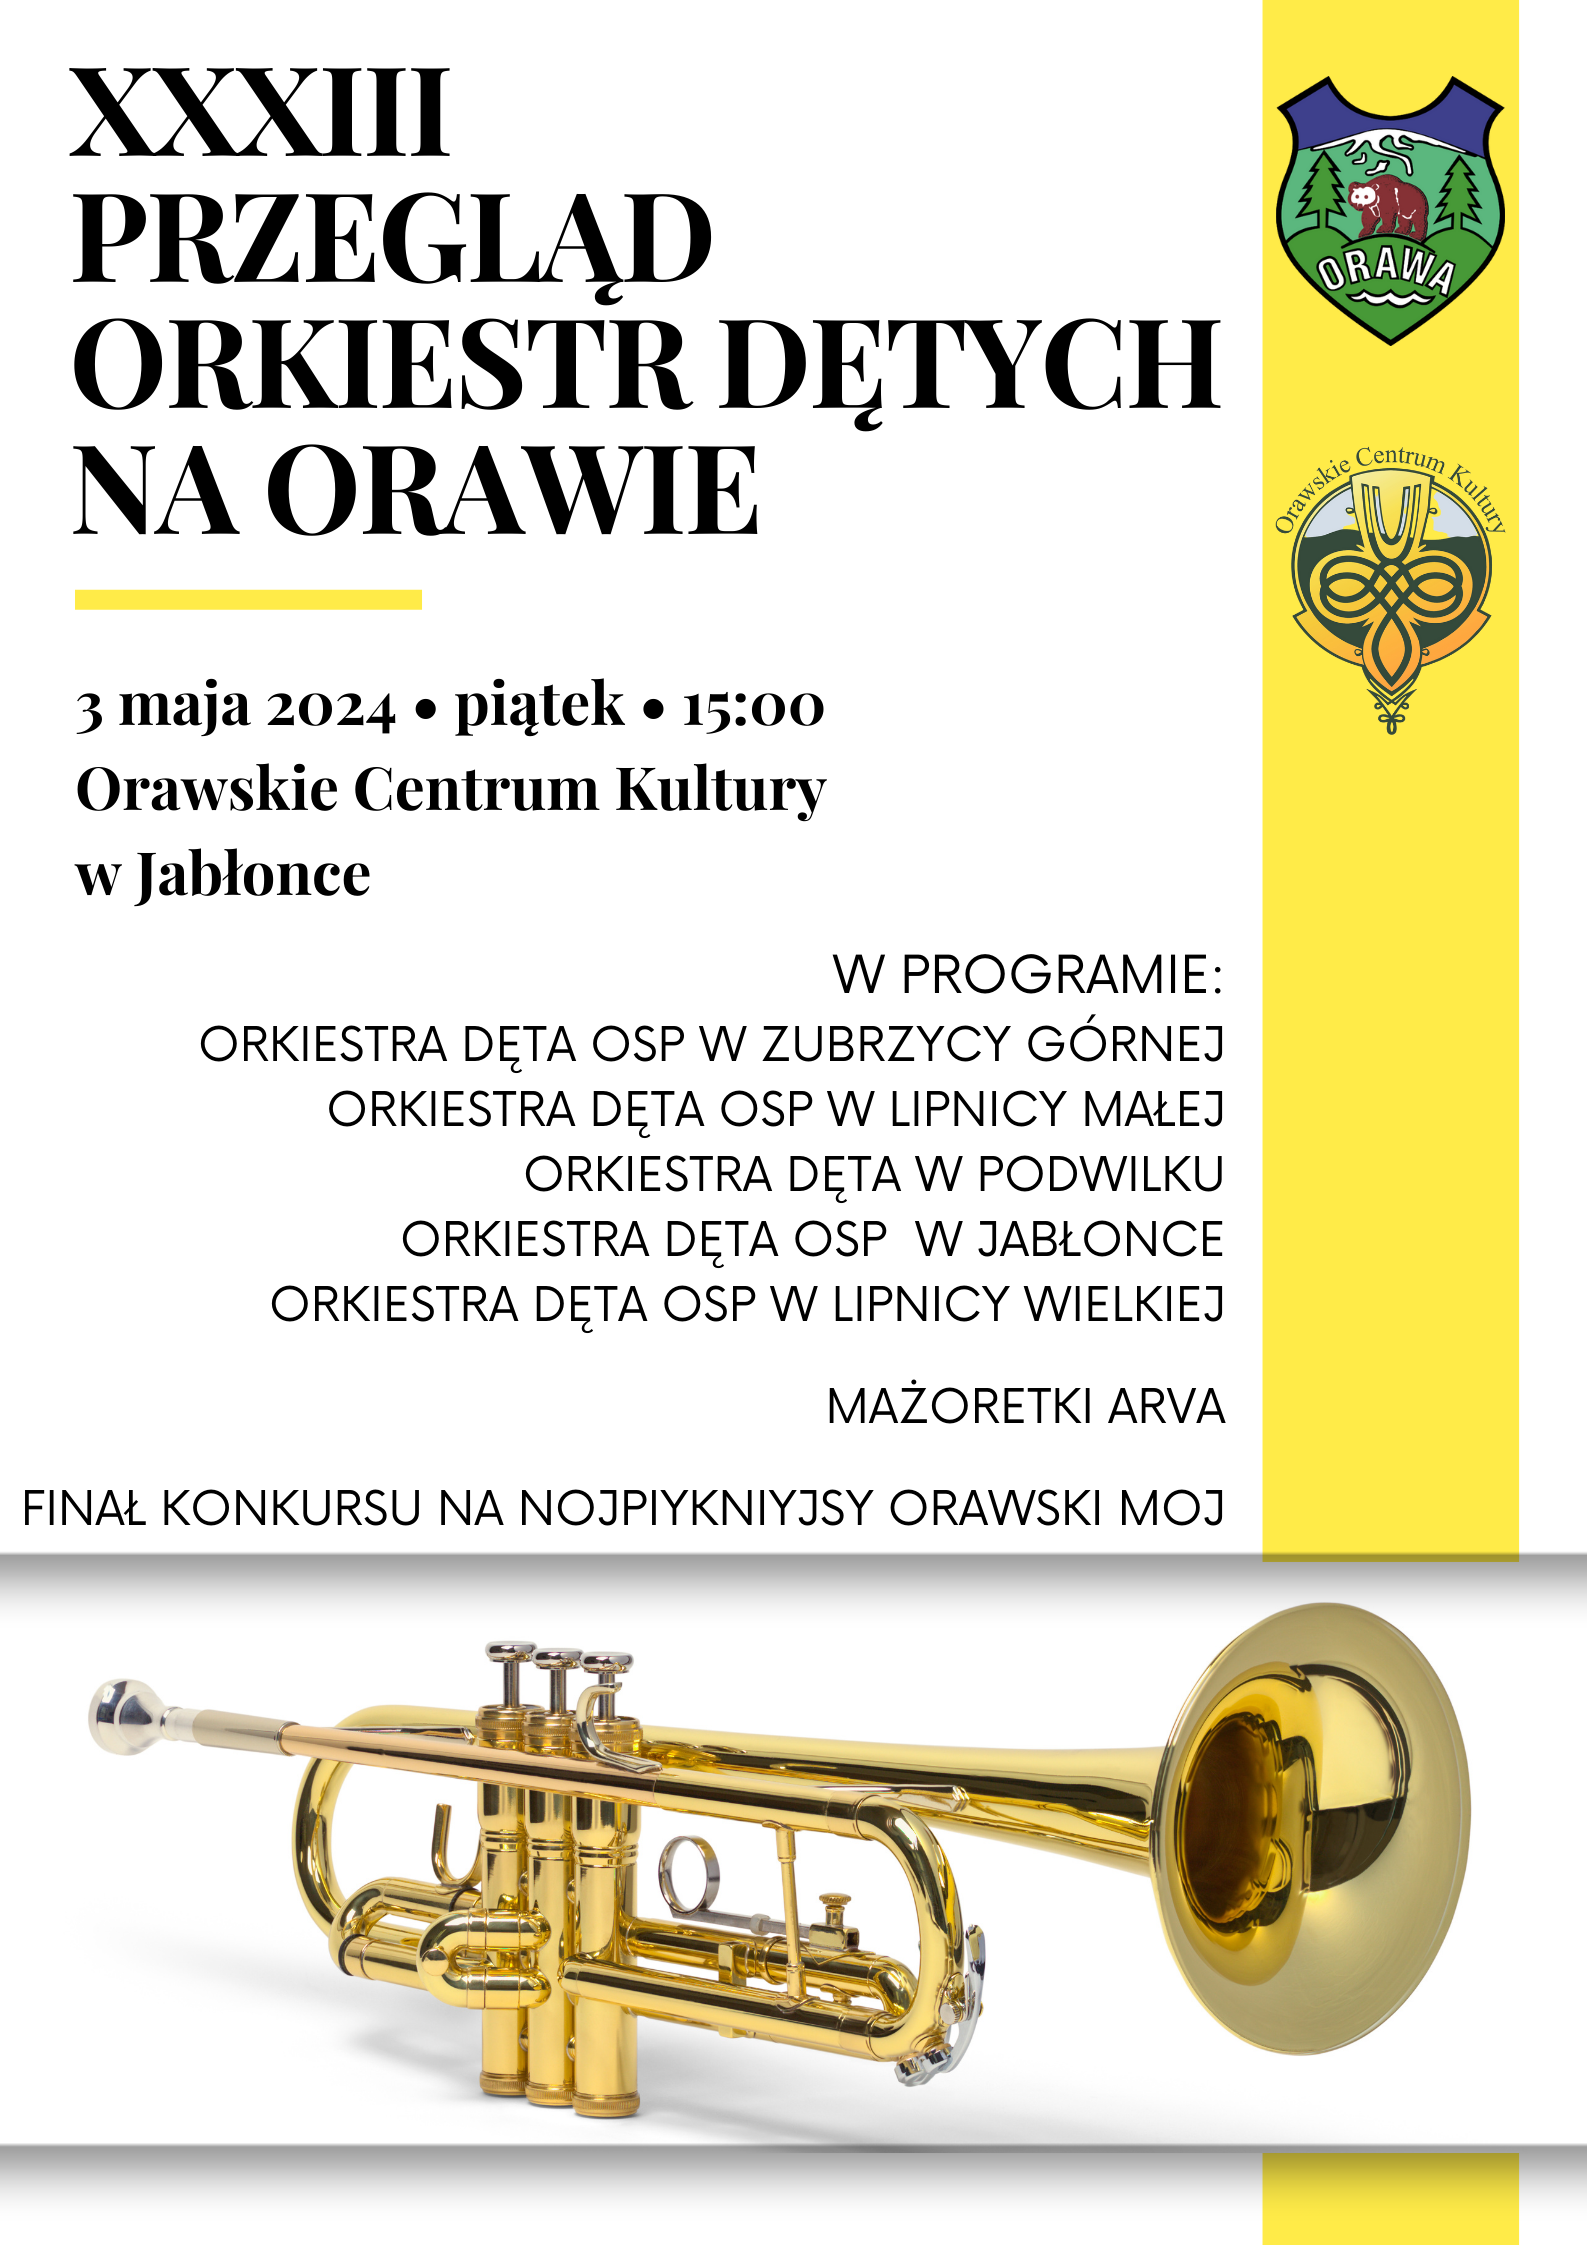 XXXIII Przeglad Orkiestr